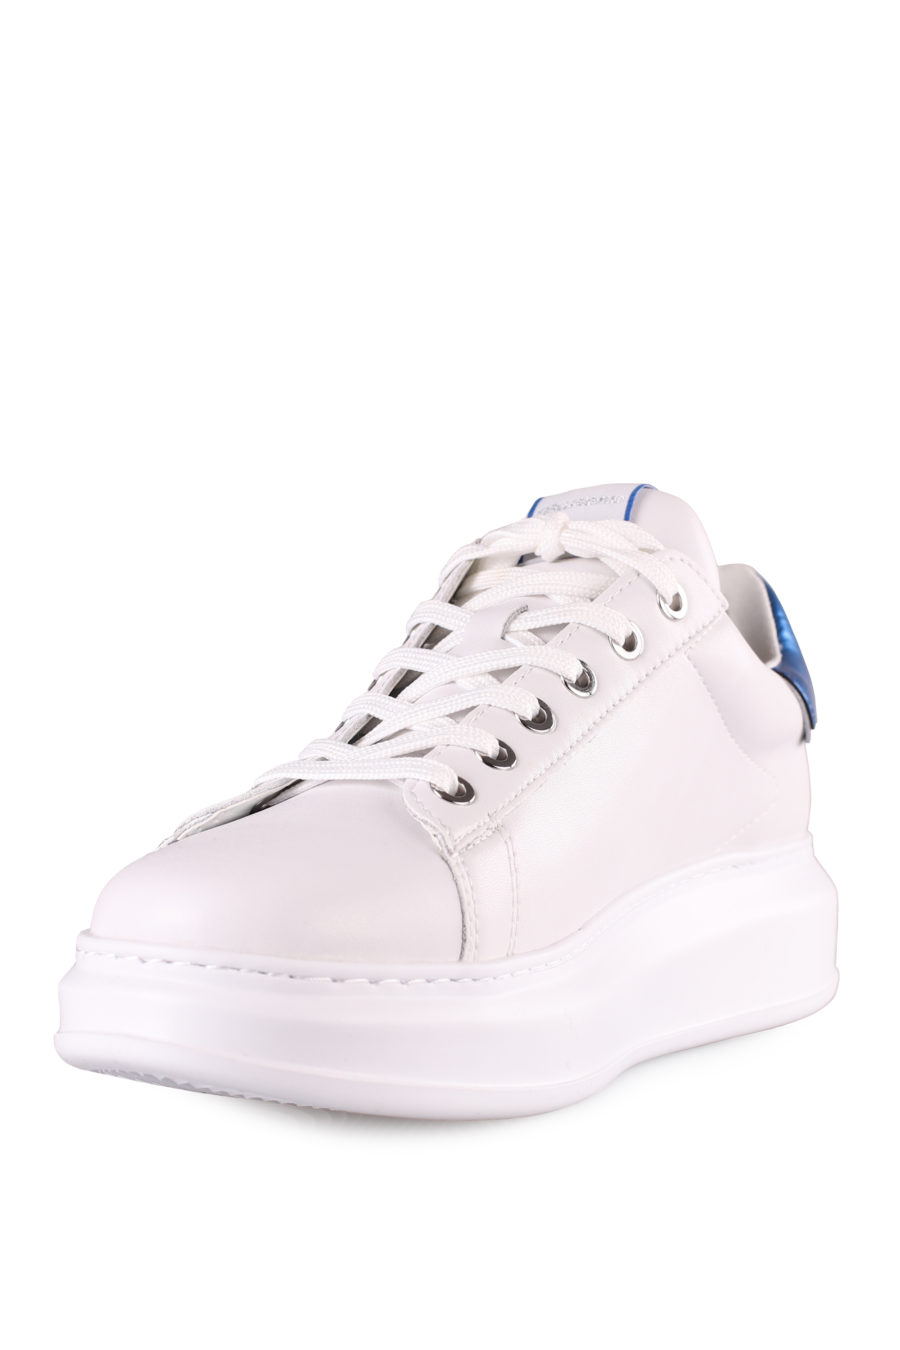 Zapatillas blancas "Kapri" detalle azul - IMG 4523 2